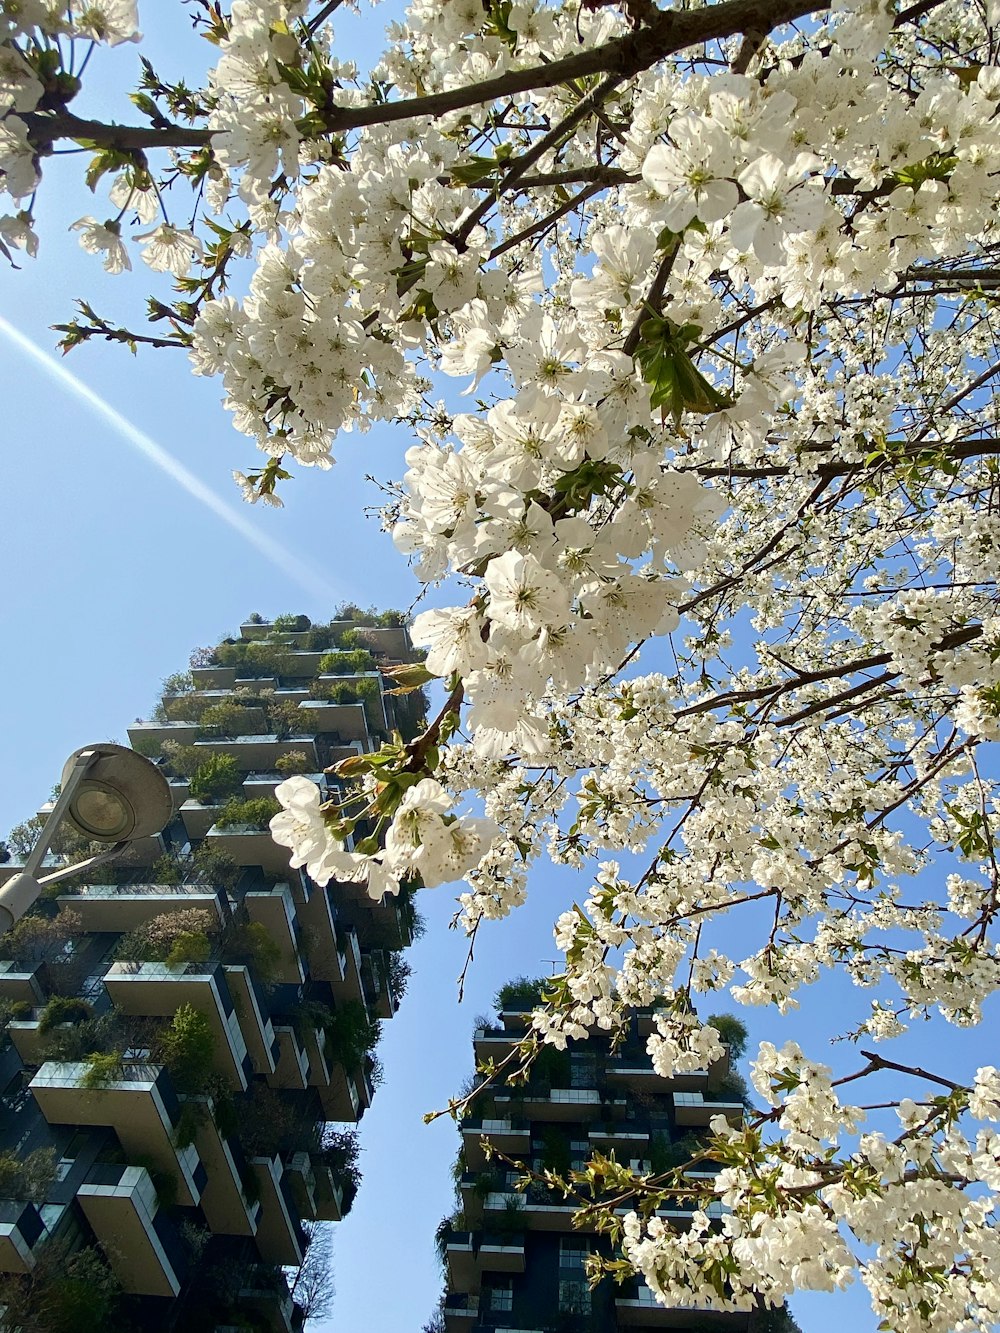 고층 건물 앞에 흰 꽃이 핀 나무